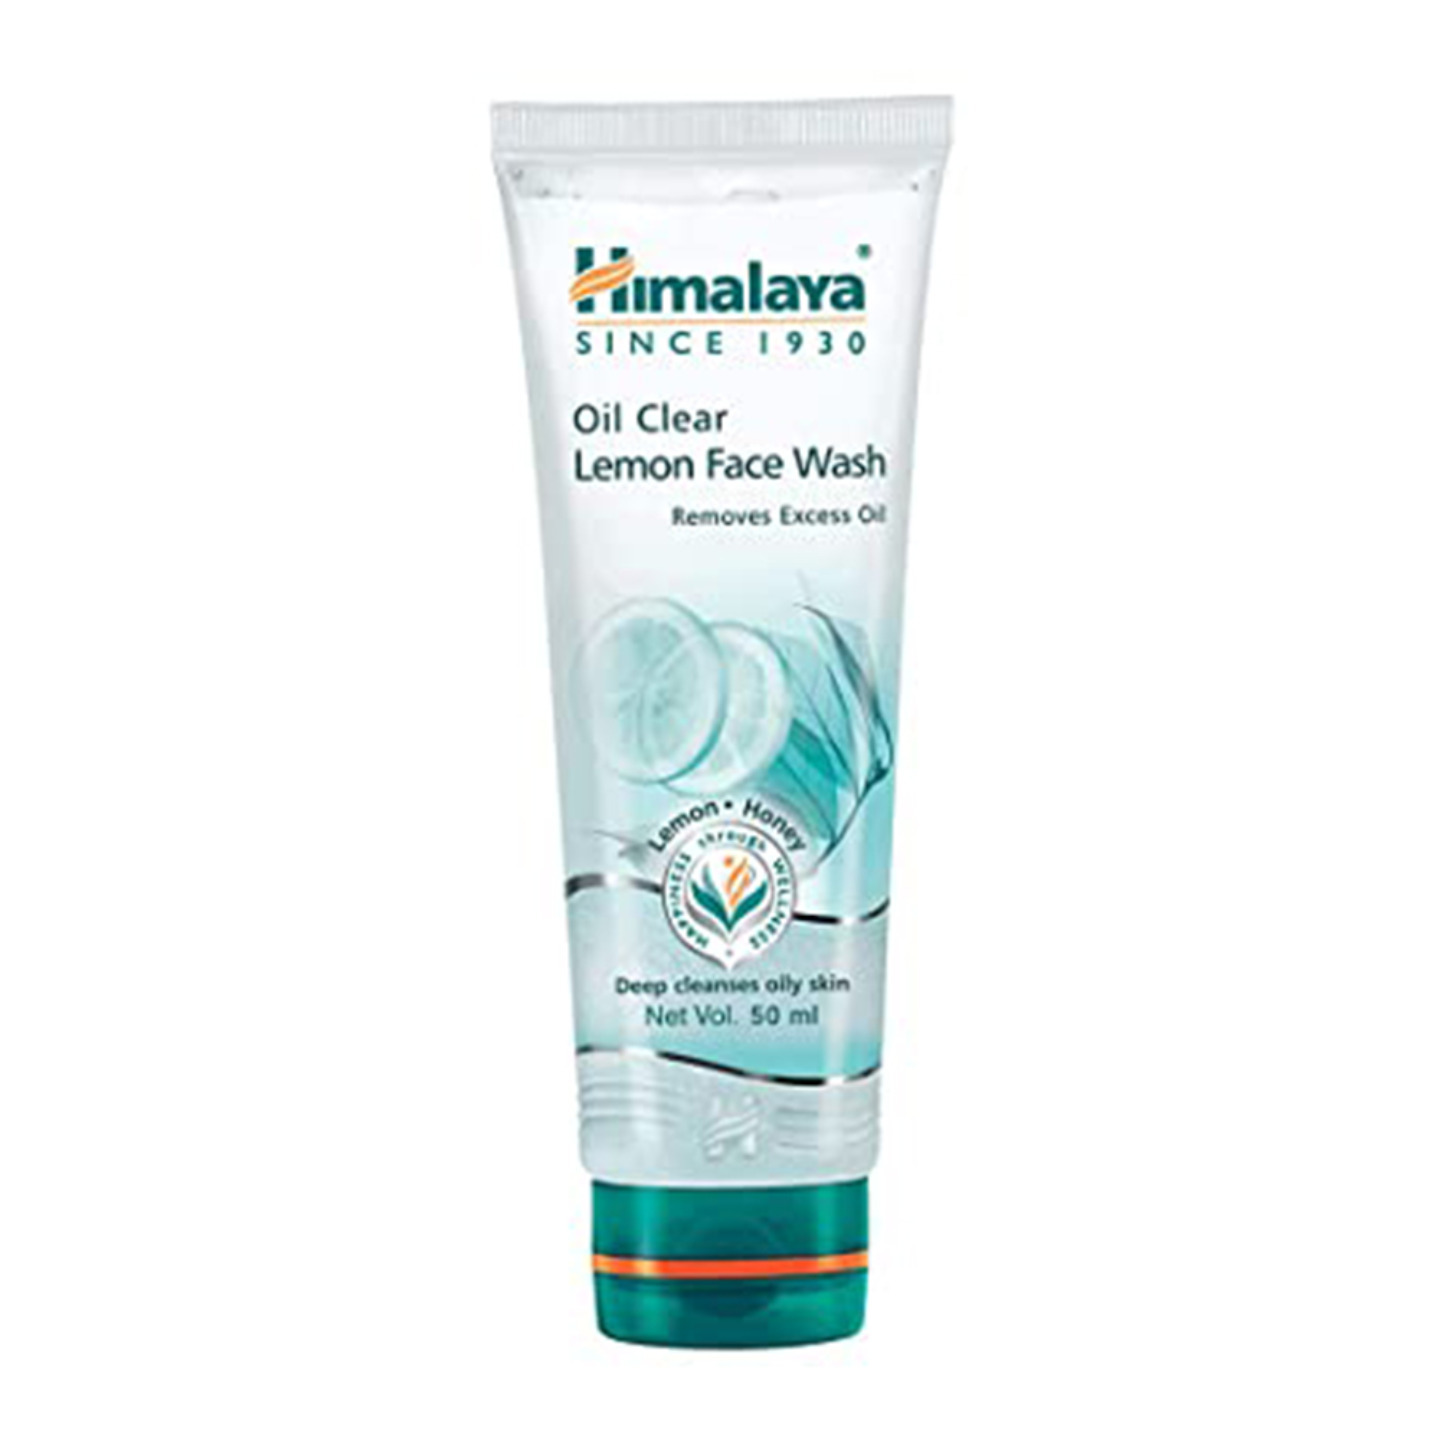  Himalaya Oil Clear Lemon Face Wash (50ml)